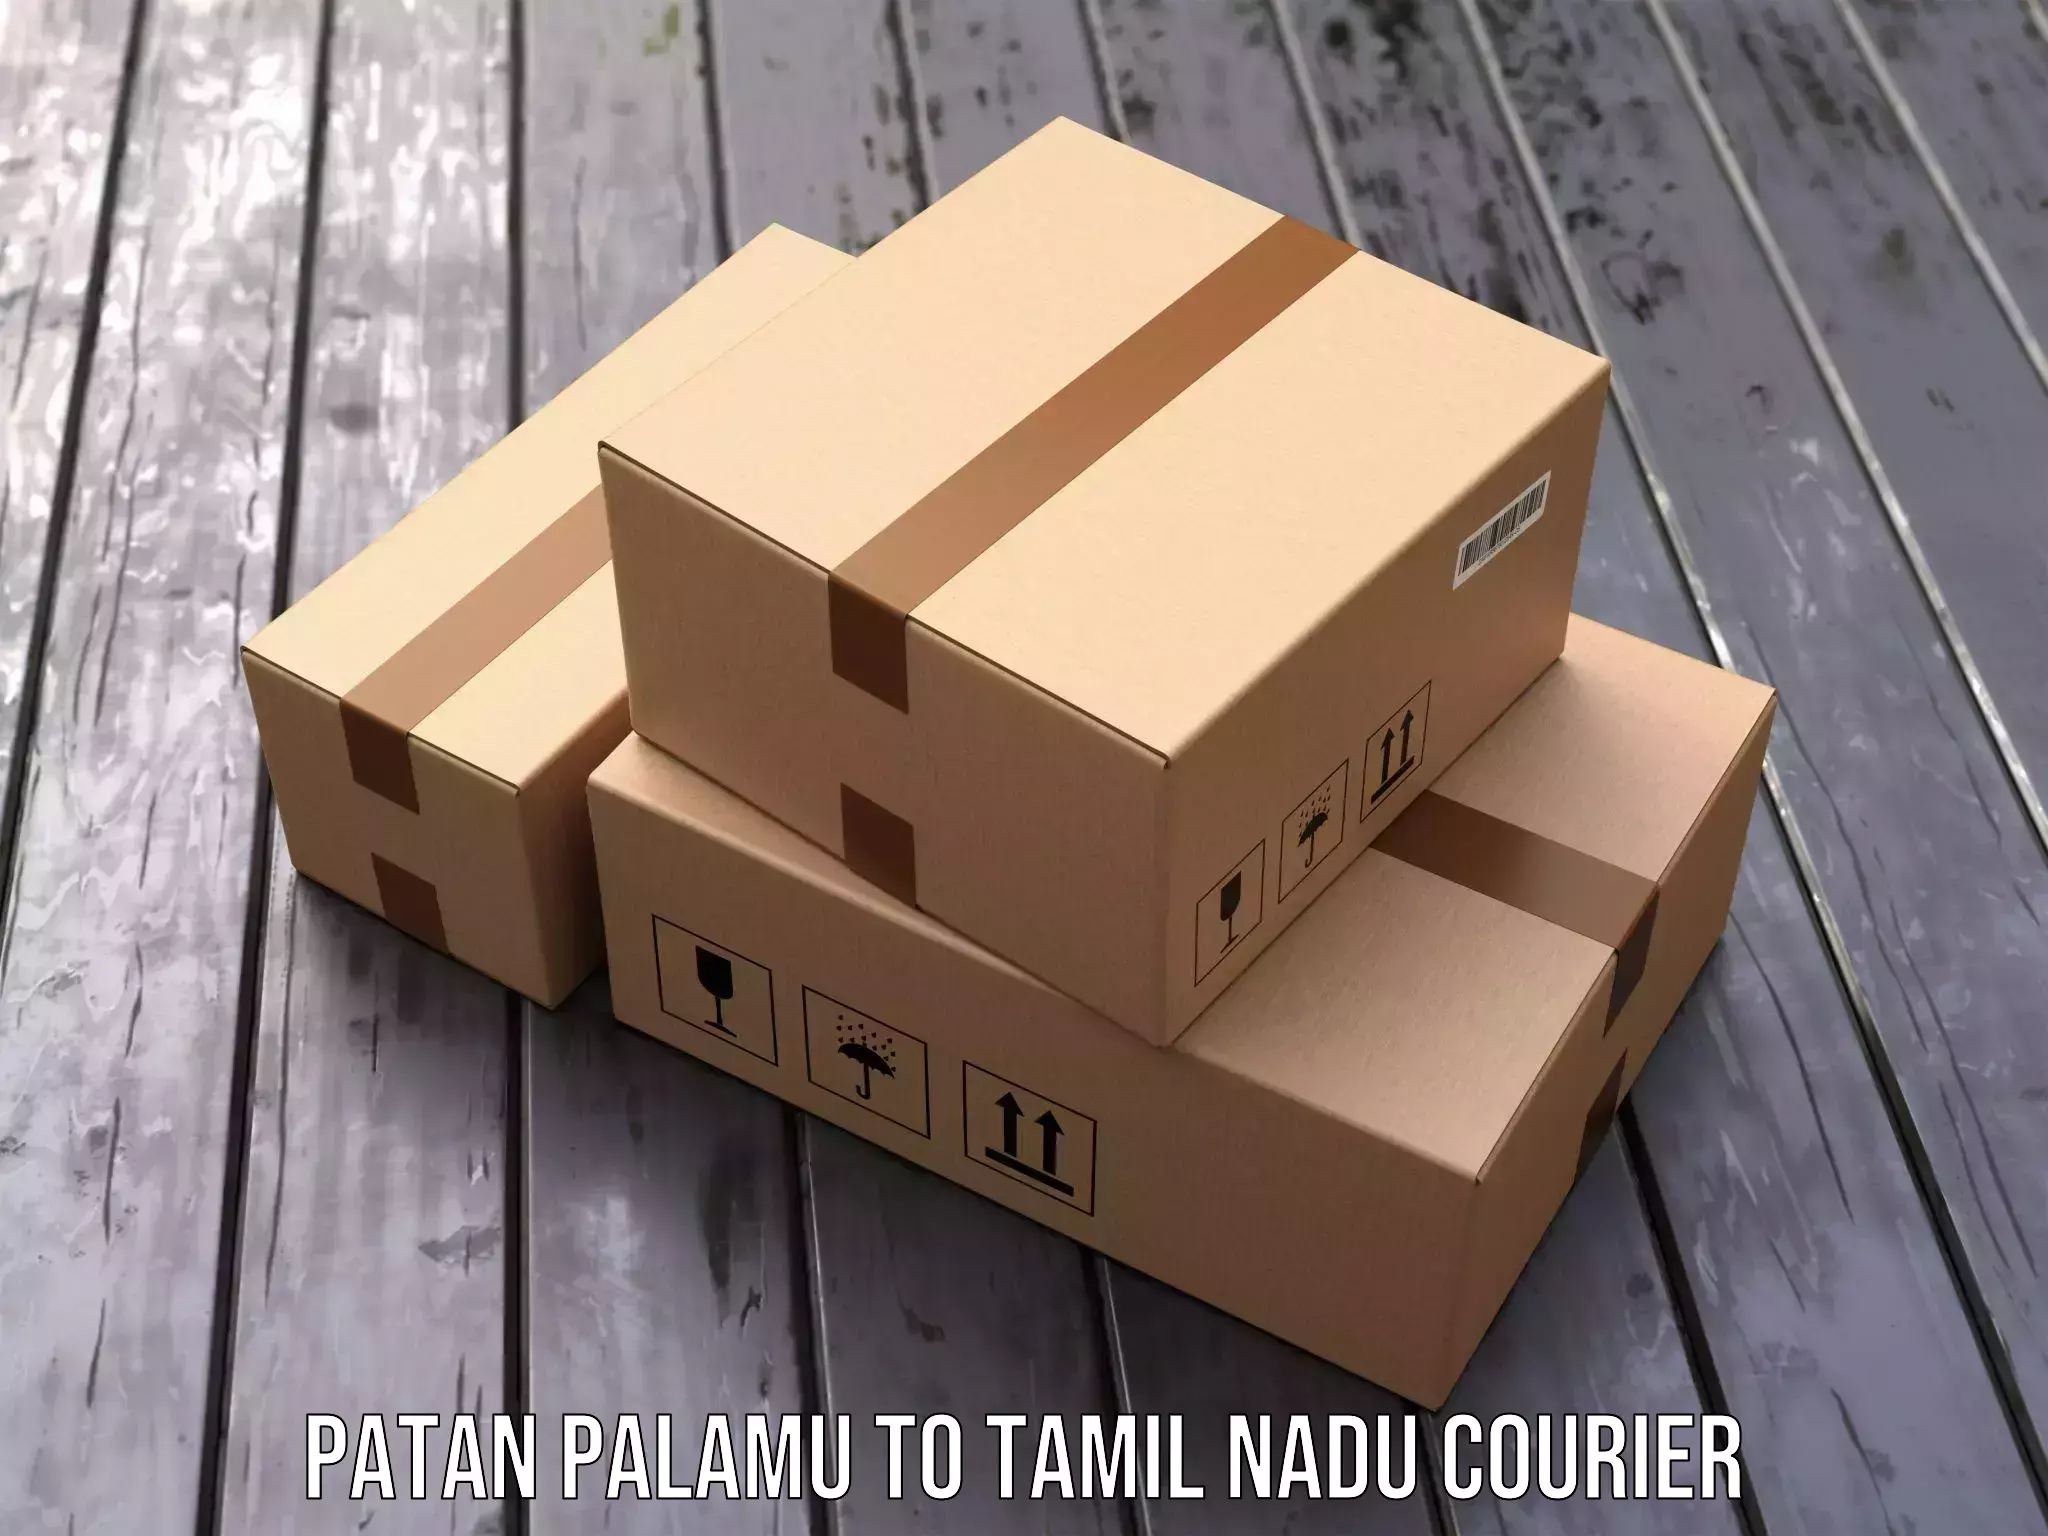 Professional courier handling Patan Palamu to Tiruvarur